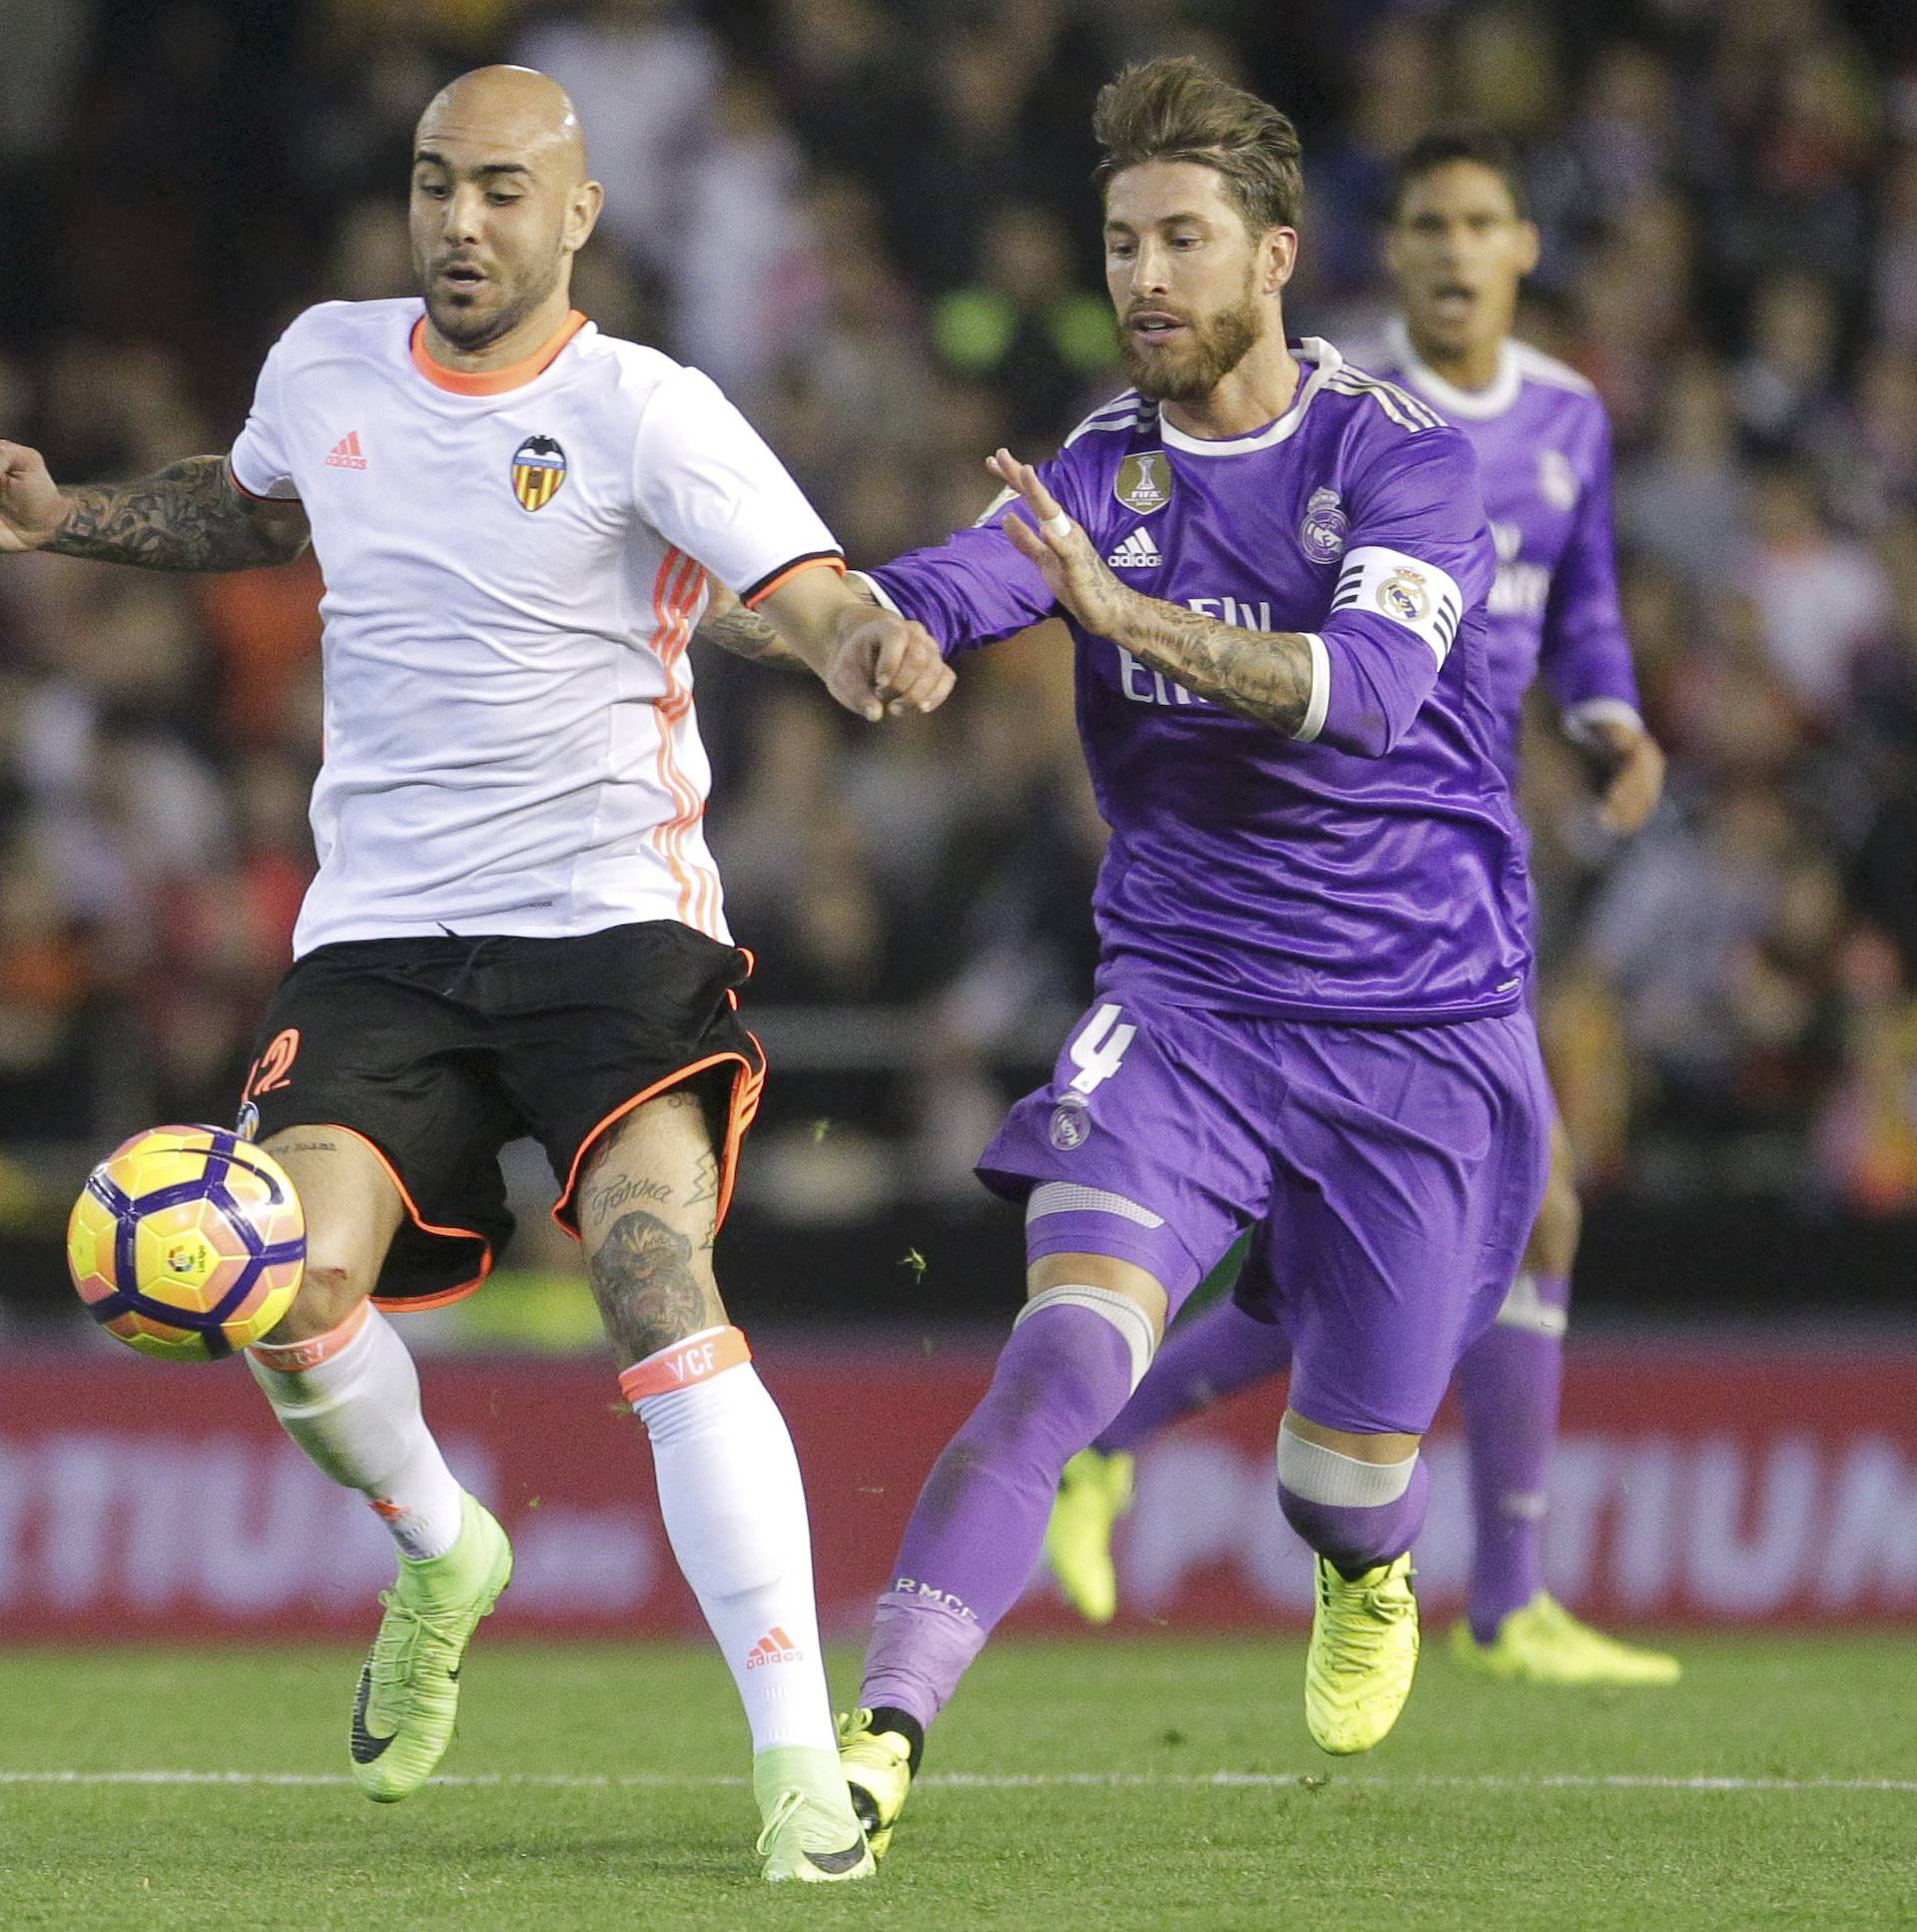 Football Soccer - Valencia v Real Madrid - Spanish La Liga Santander